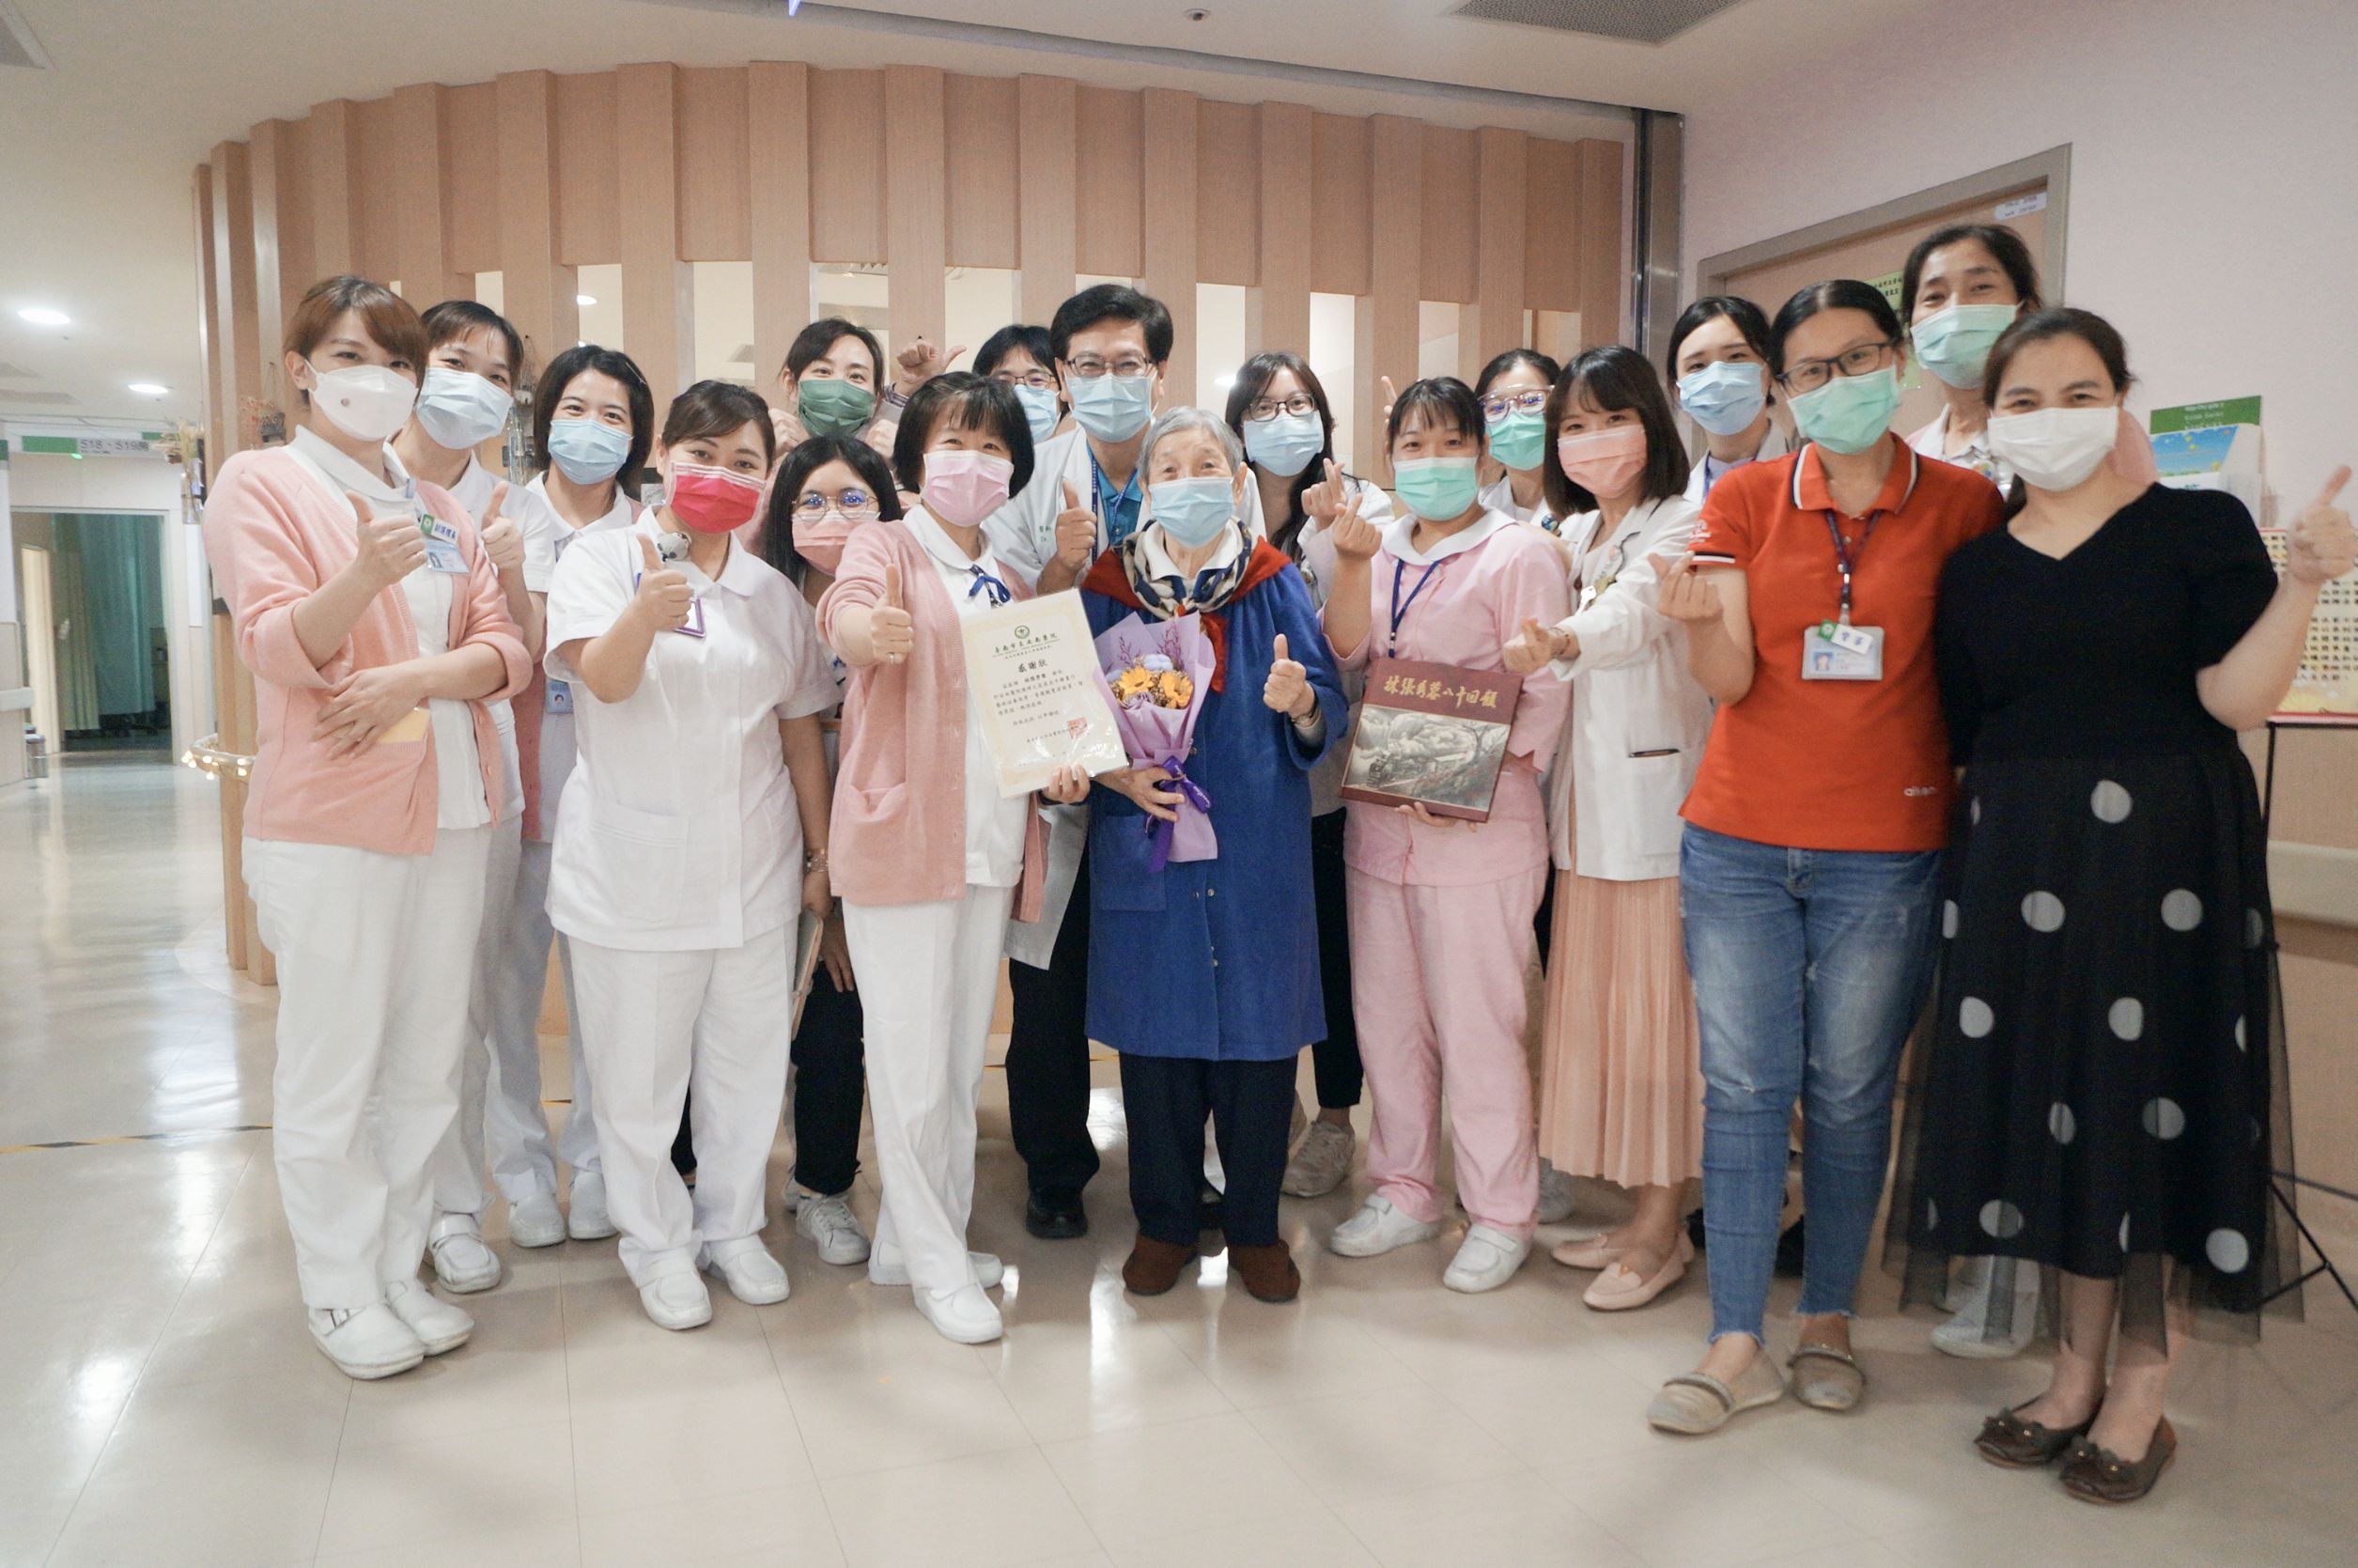 
	安南醫院附設護理之家舉辦林張秀蓉女士彩繪人生畫展。
